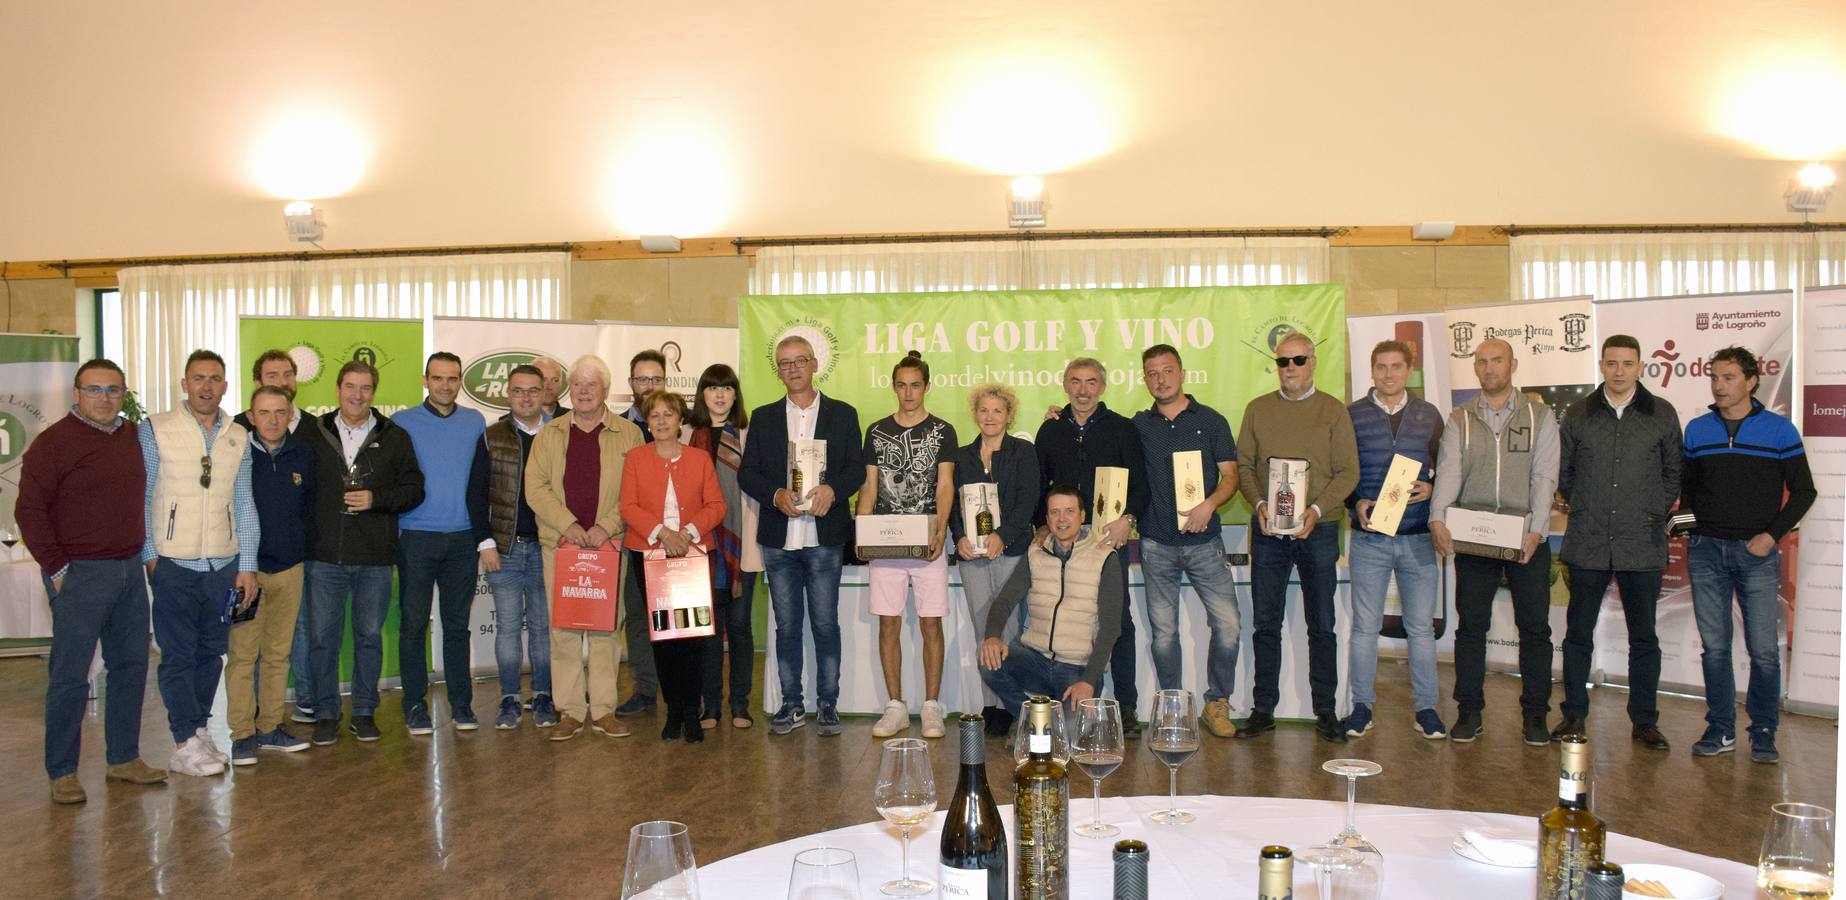 Los ganadores del torneo de la LIga de Golf y Vino recibieron sus premios.